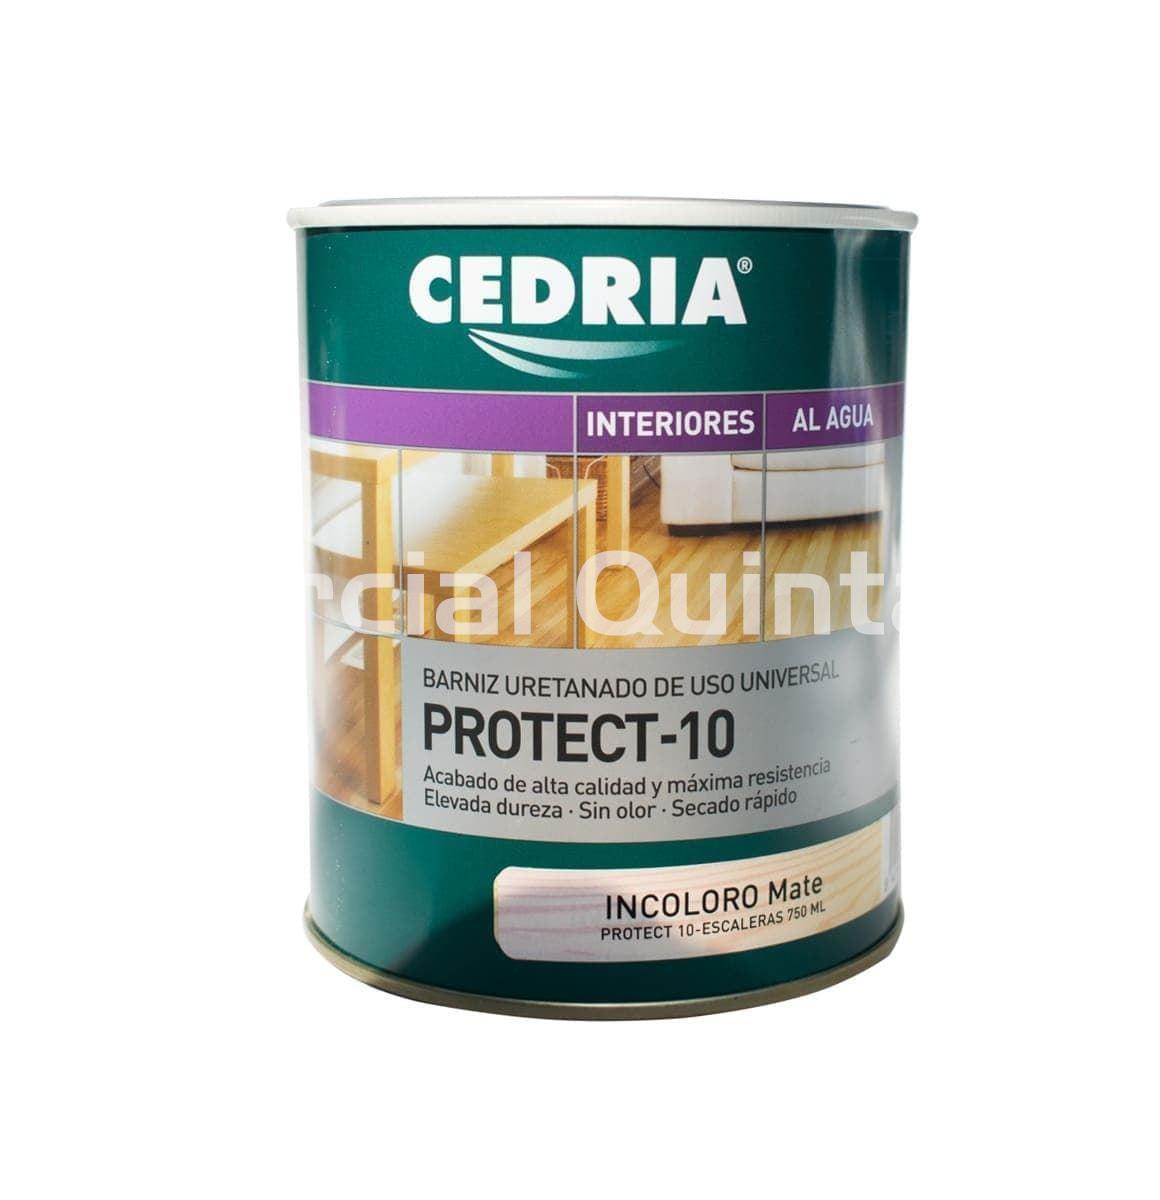 CEDRIA Protec-10 MATE - Imagen 1